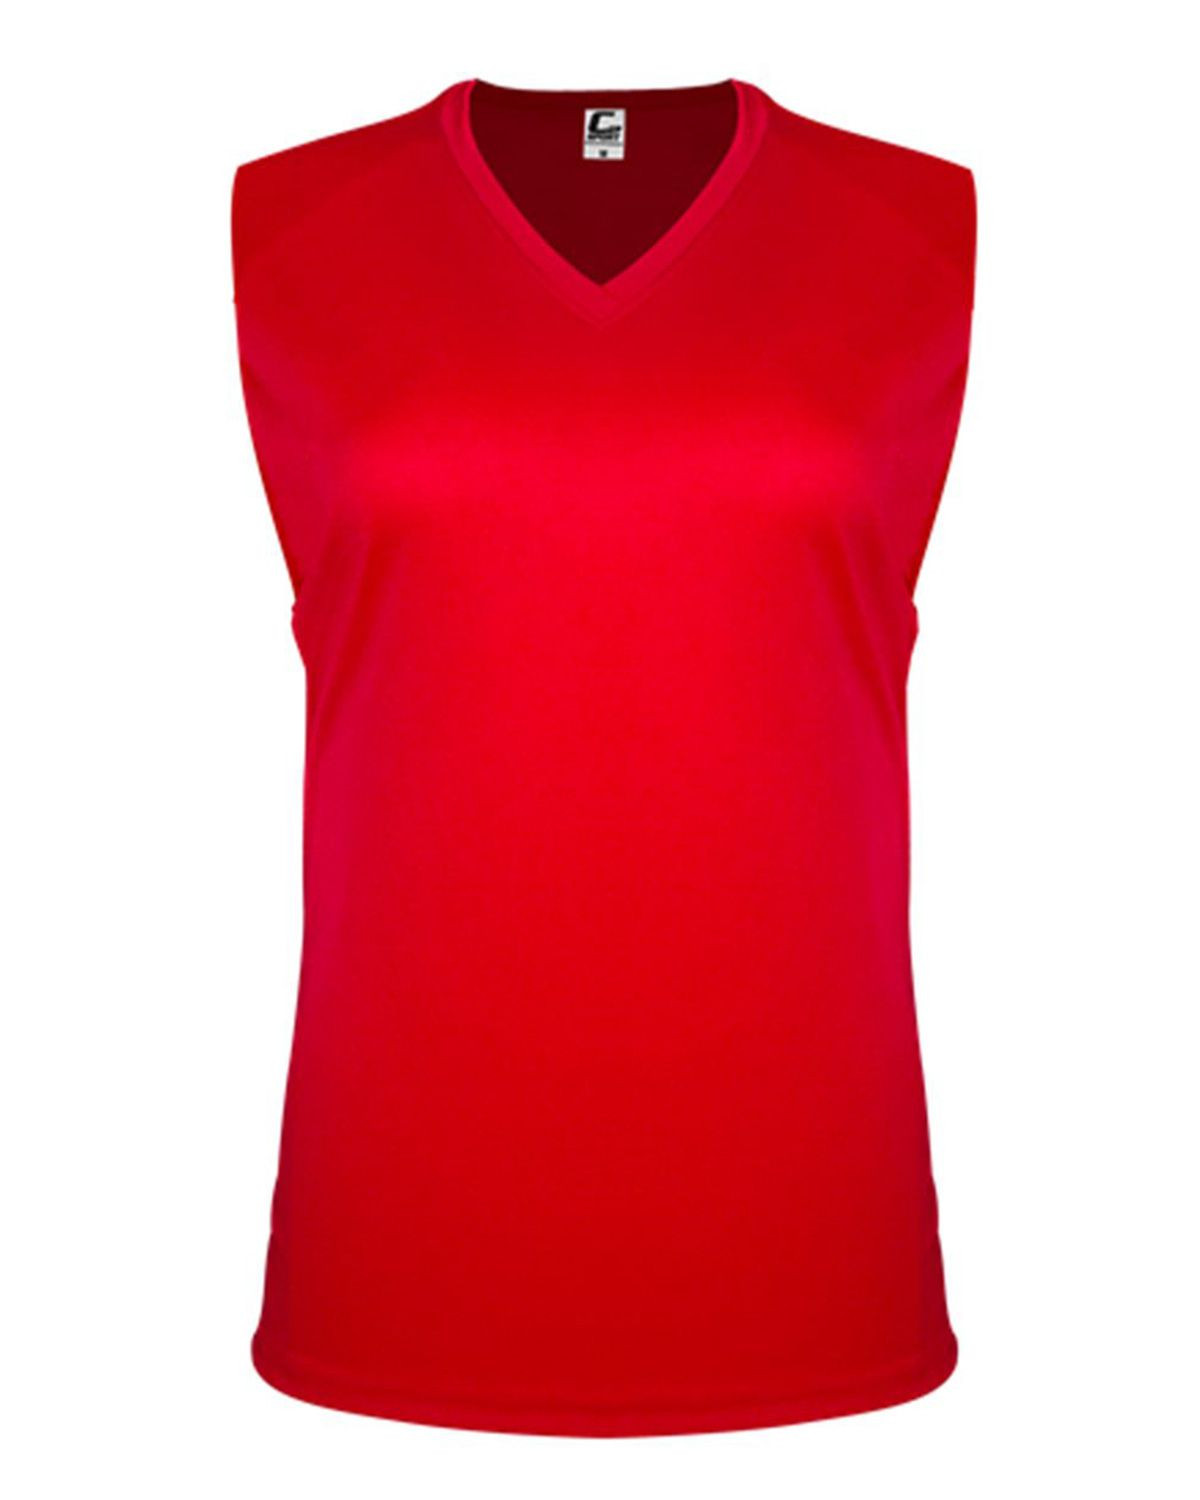 C2 Sport 5663 Women's Sleeveless Tee - Red - XS #sleeveless